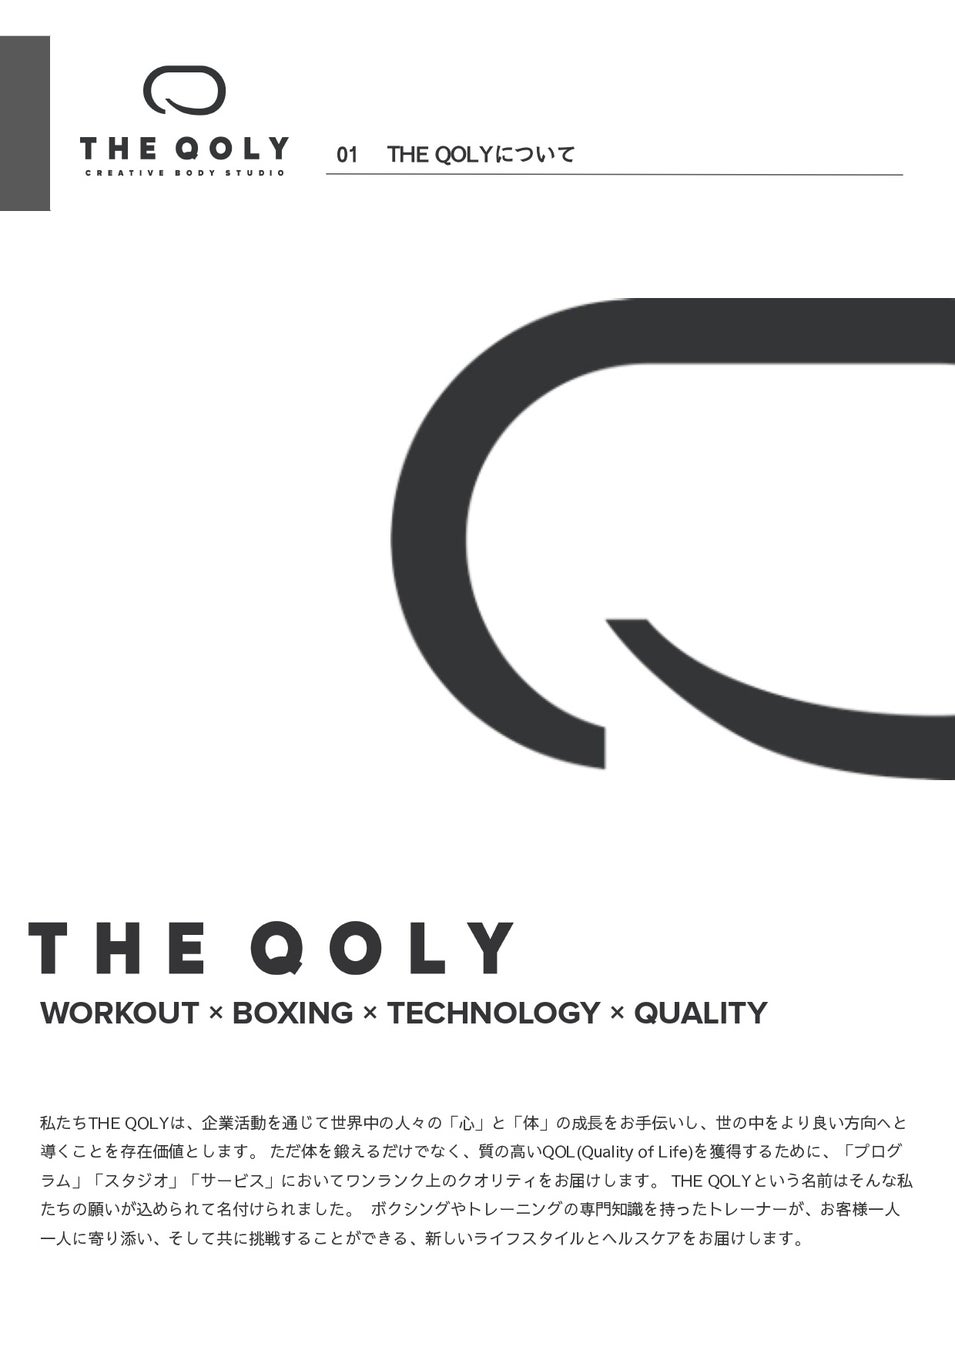 【千葉県初】コンセプチュアルなクリエイティブボディスタジオ「THE QOLY 千葉店」OPEN！ハイエンドな内装とヘルステックでフィットネスを日常に。あなたのQOL向上をお手伝いします。